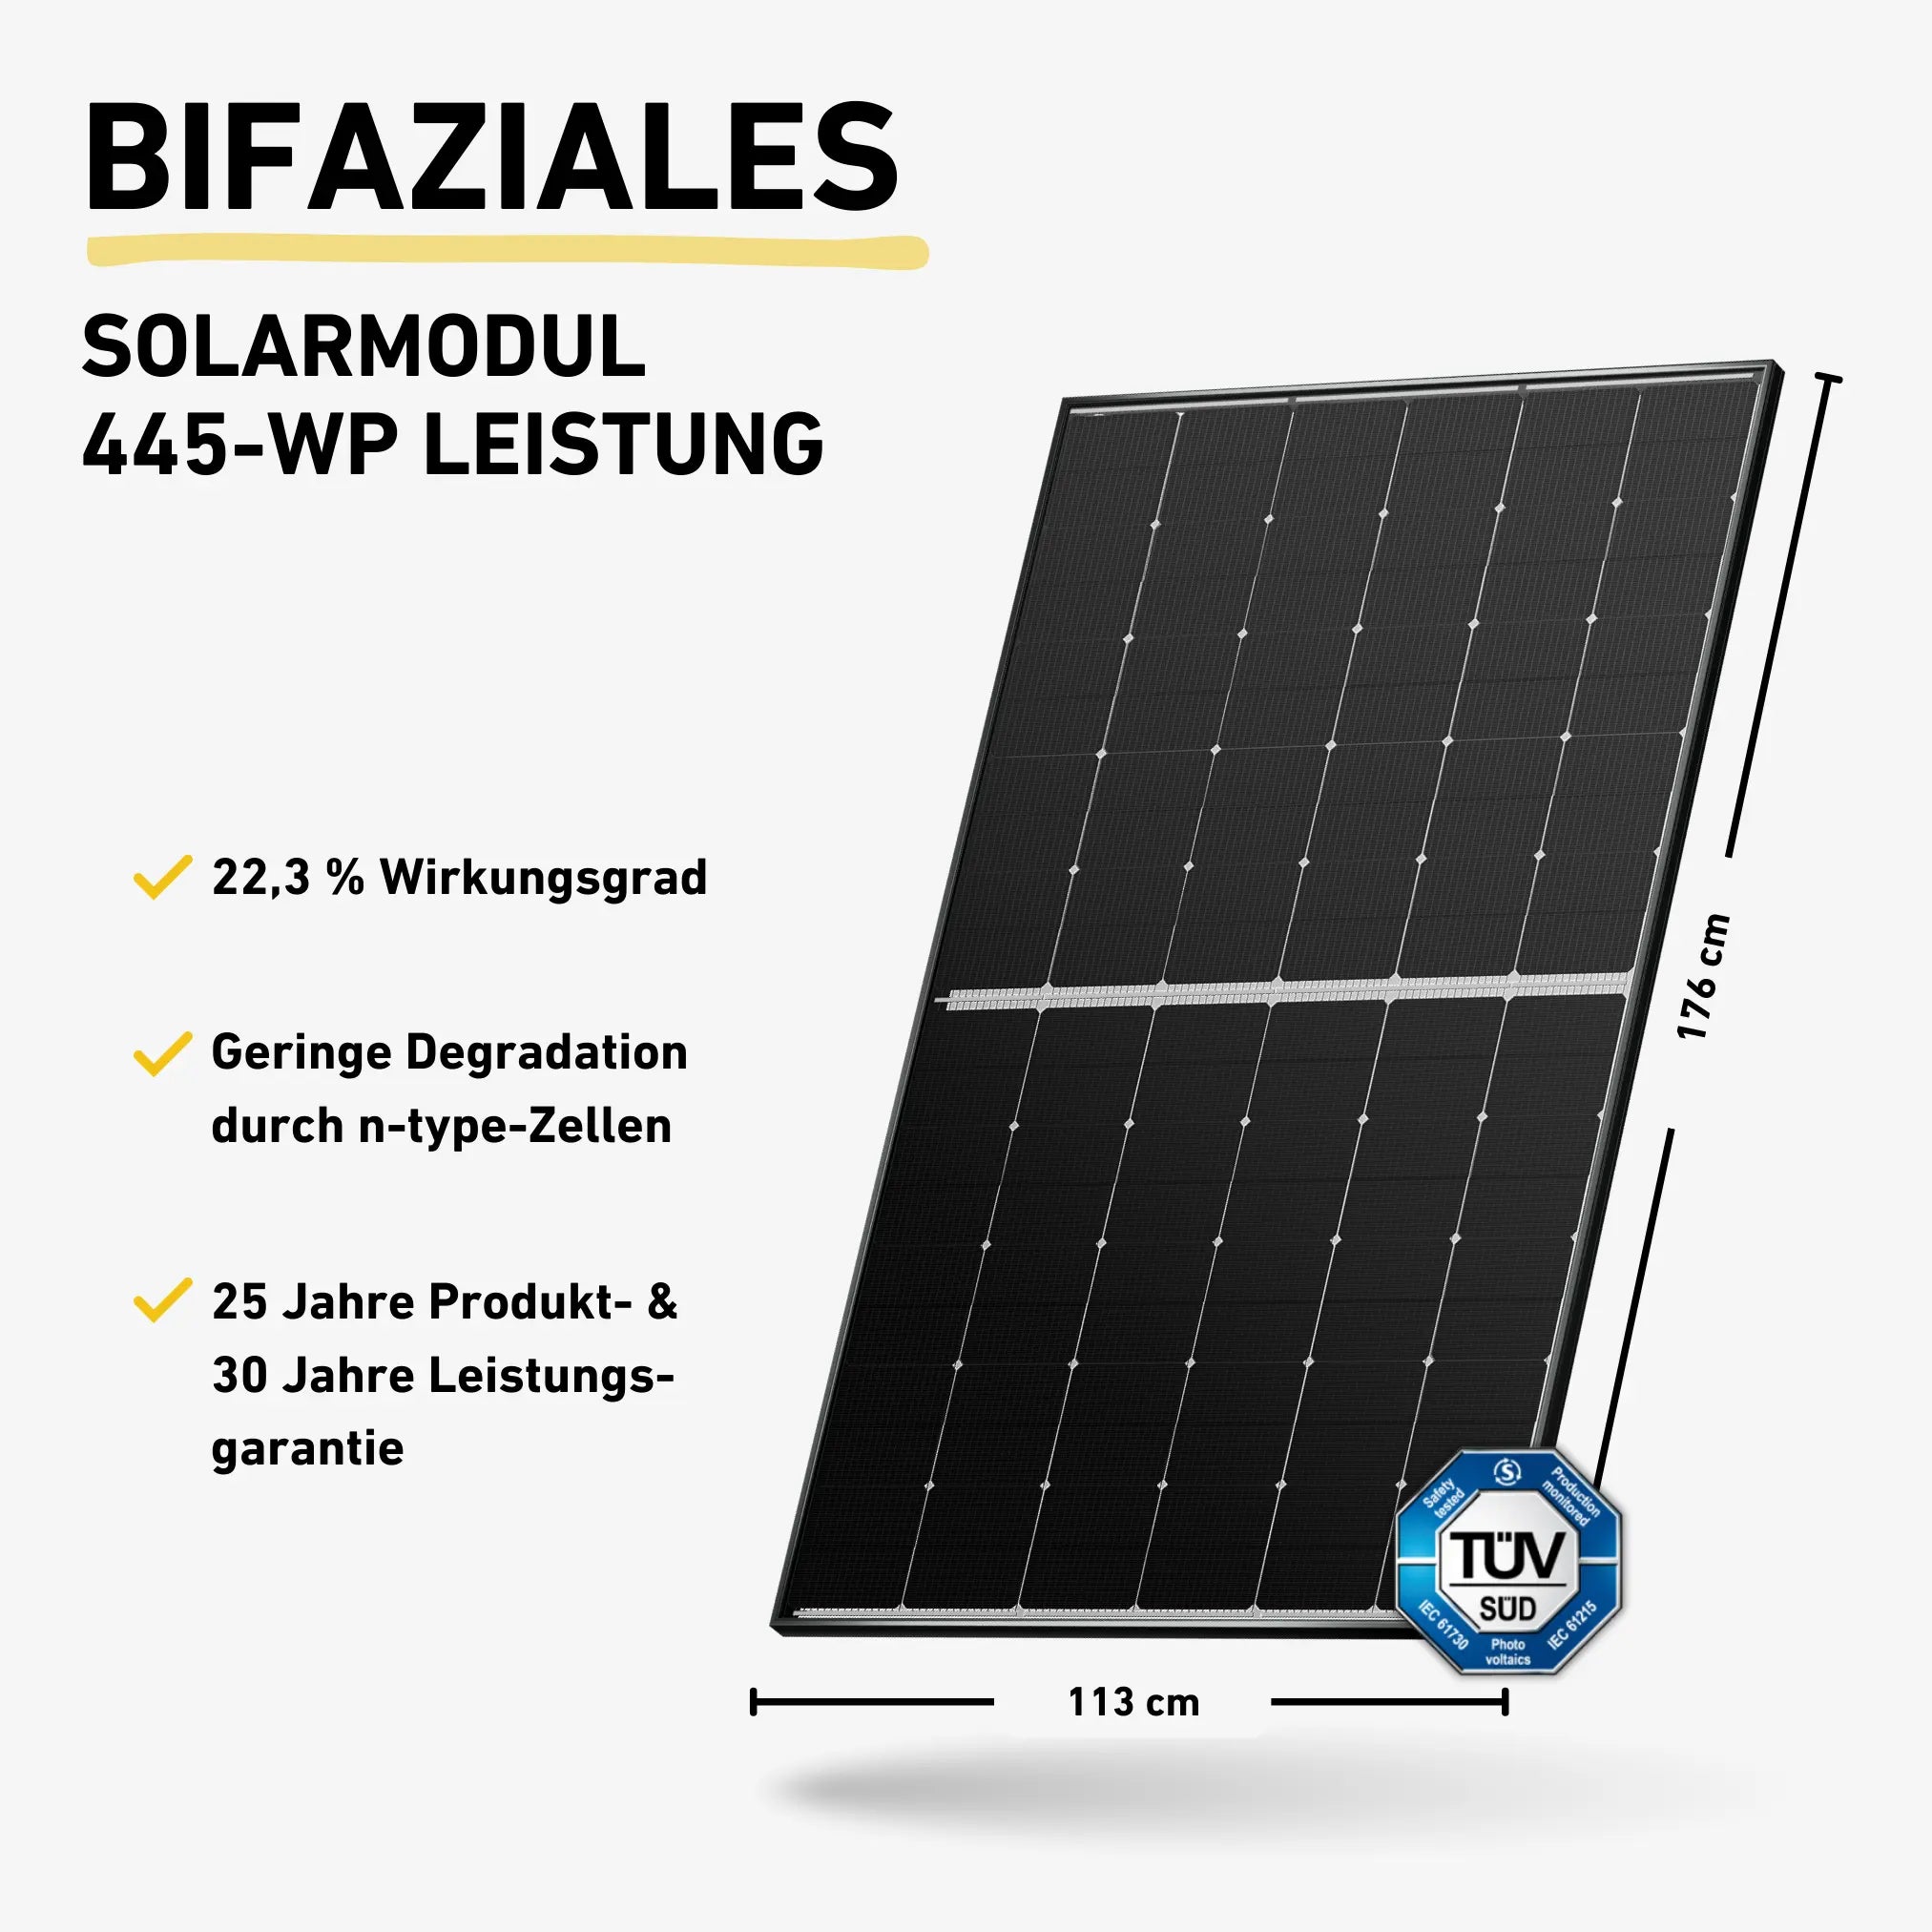 Balkonstrom Basic Bifaziales Solarmodul 445-WP Produktbild mit Produkteigenschaften